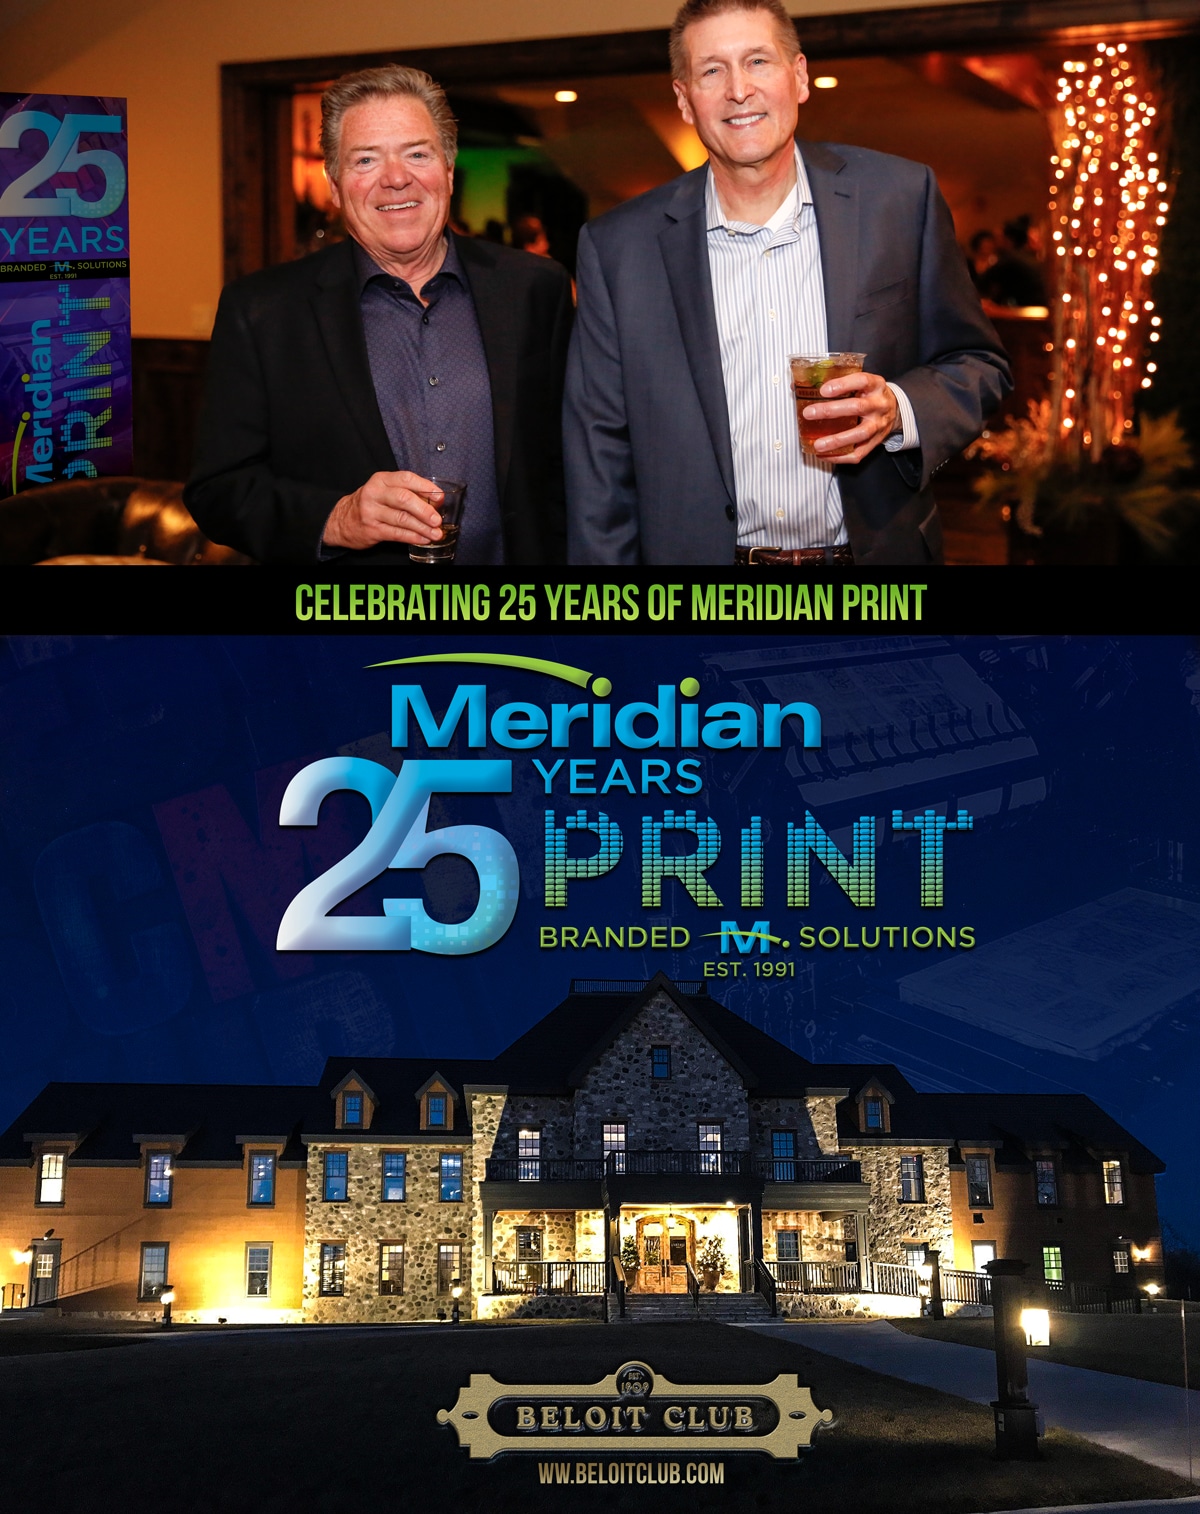 Meridian-25 years-in-print